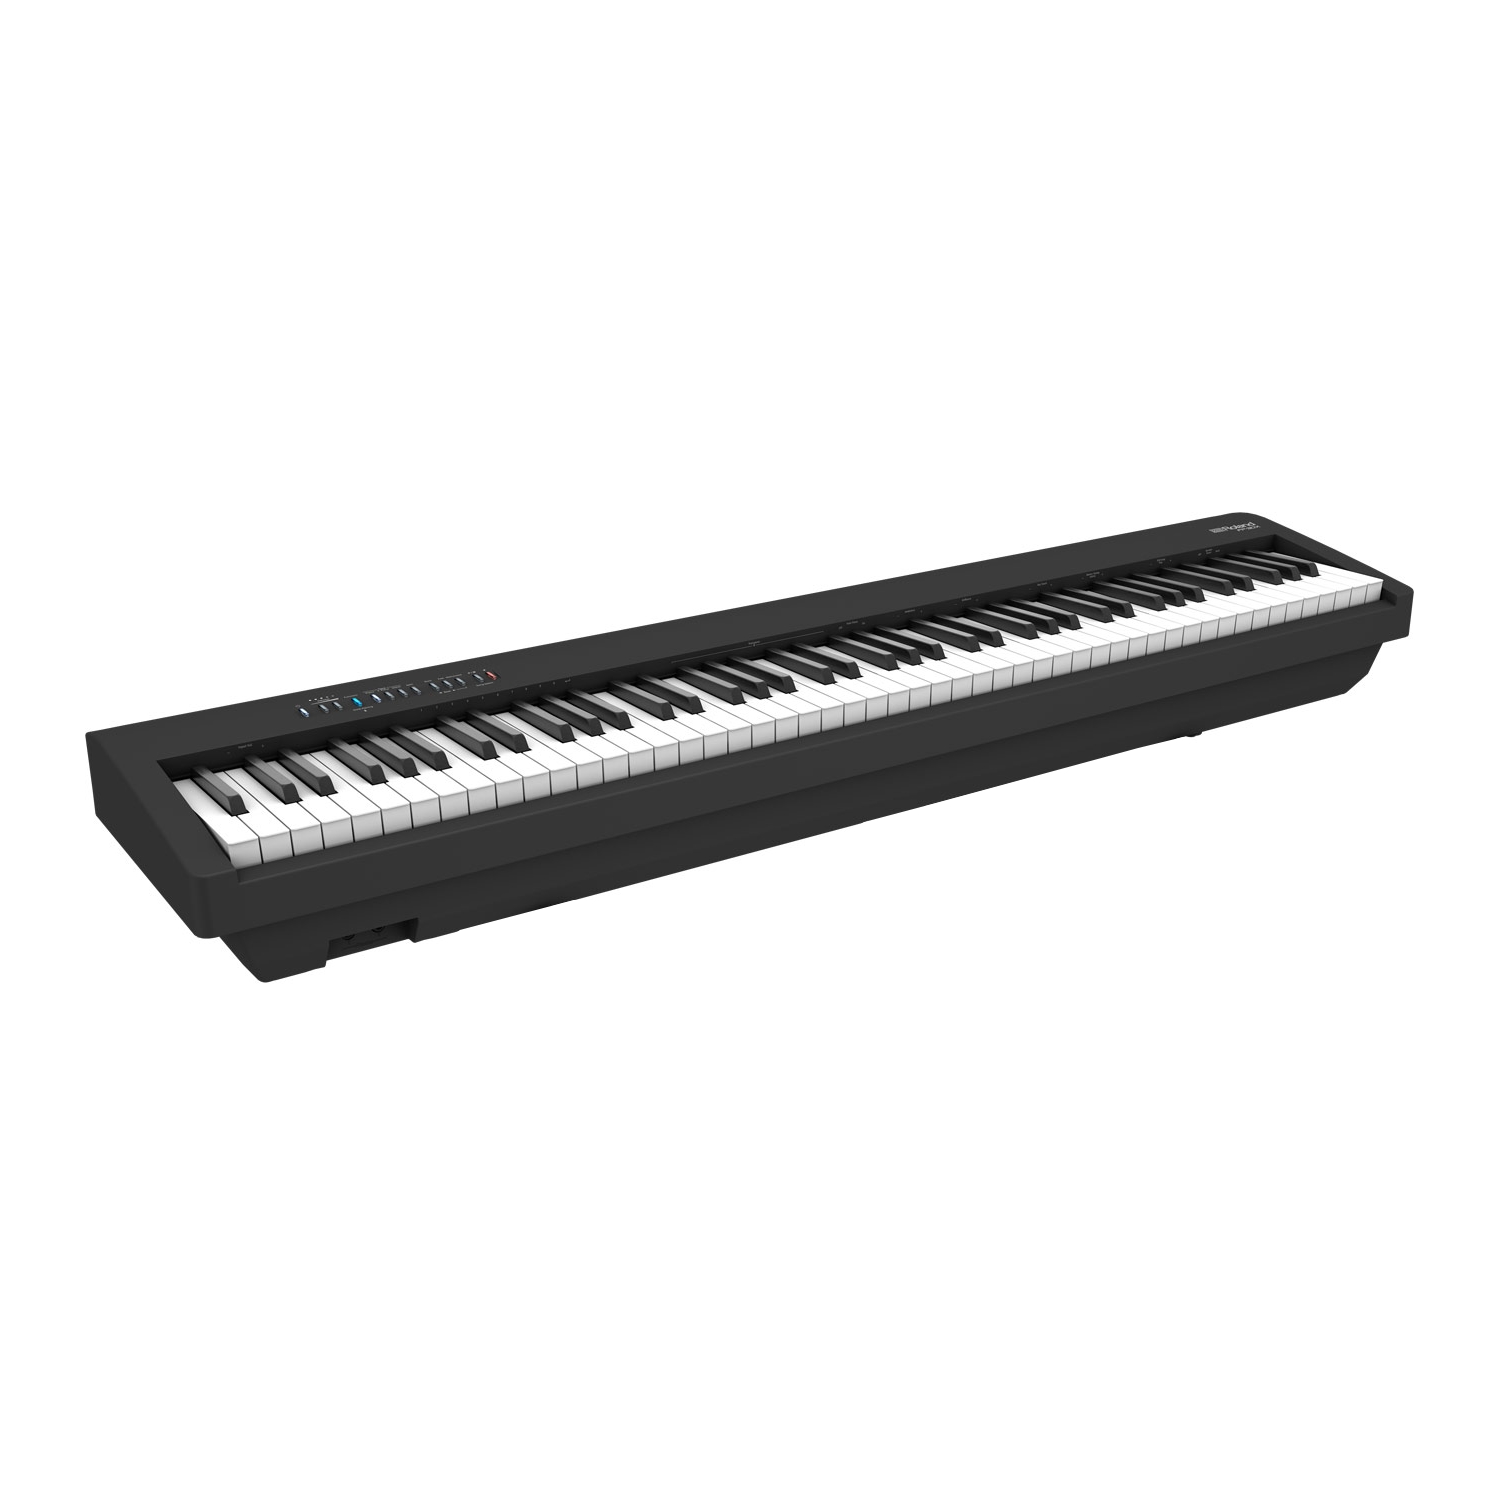 ROLAND FP-30X-BK - цифровое фортепиано, 88 кл. PHA-4 Standard, 56 тембров, 256 полиф., (цвет чёрный)